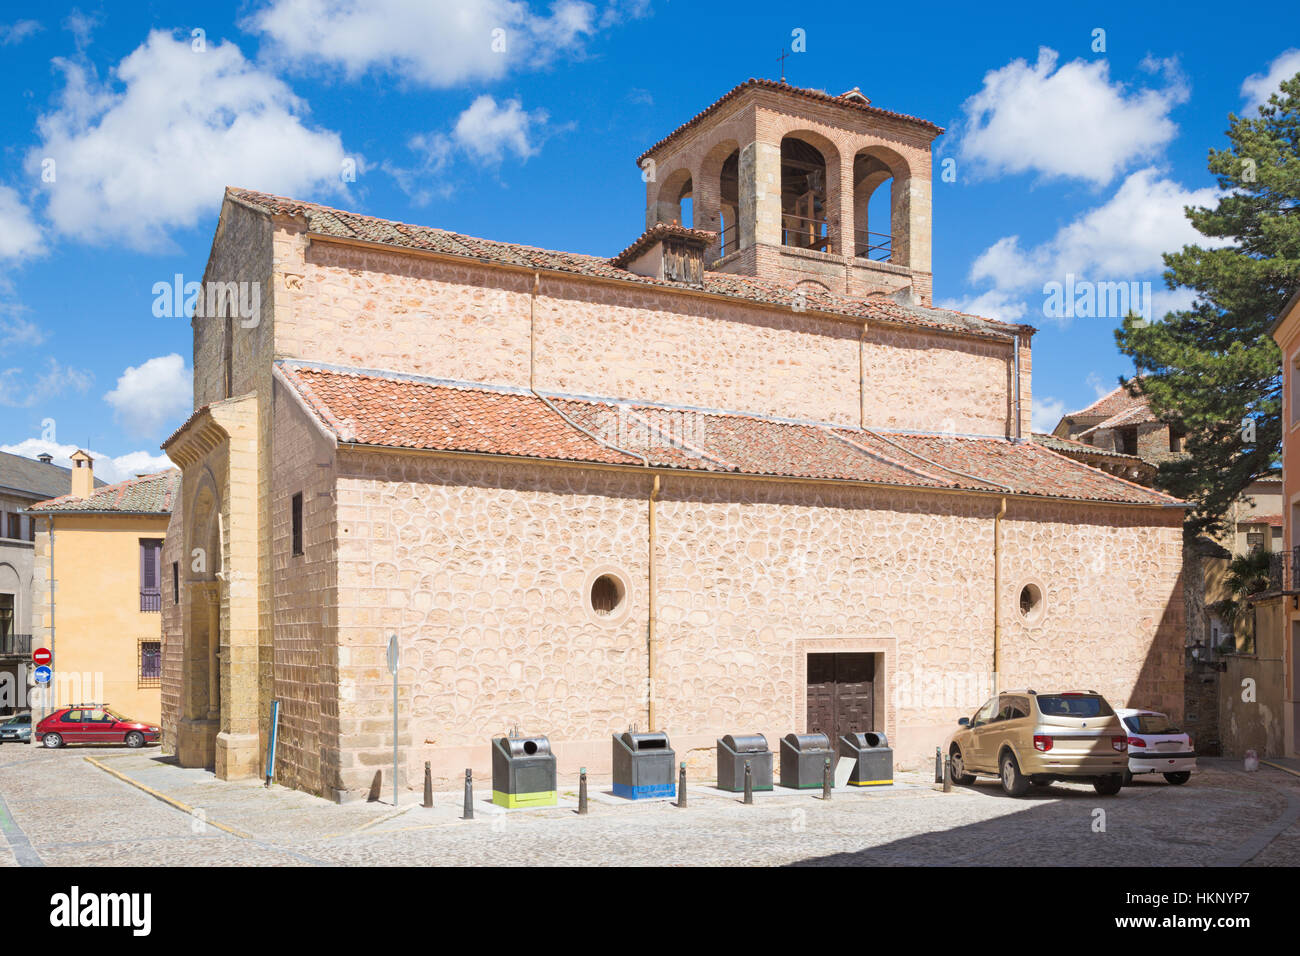 Segovia - The Romanesque church Iglesia de San Sebastian. Stock Photo